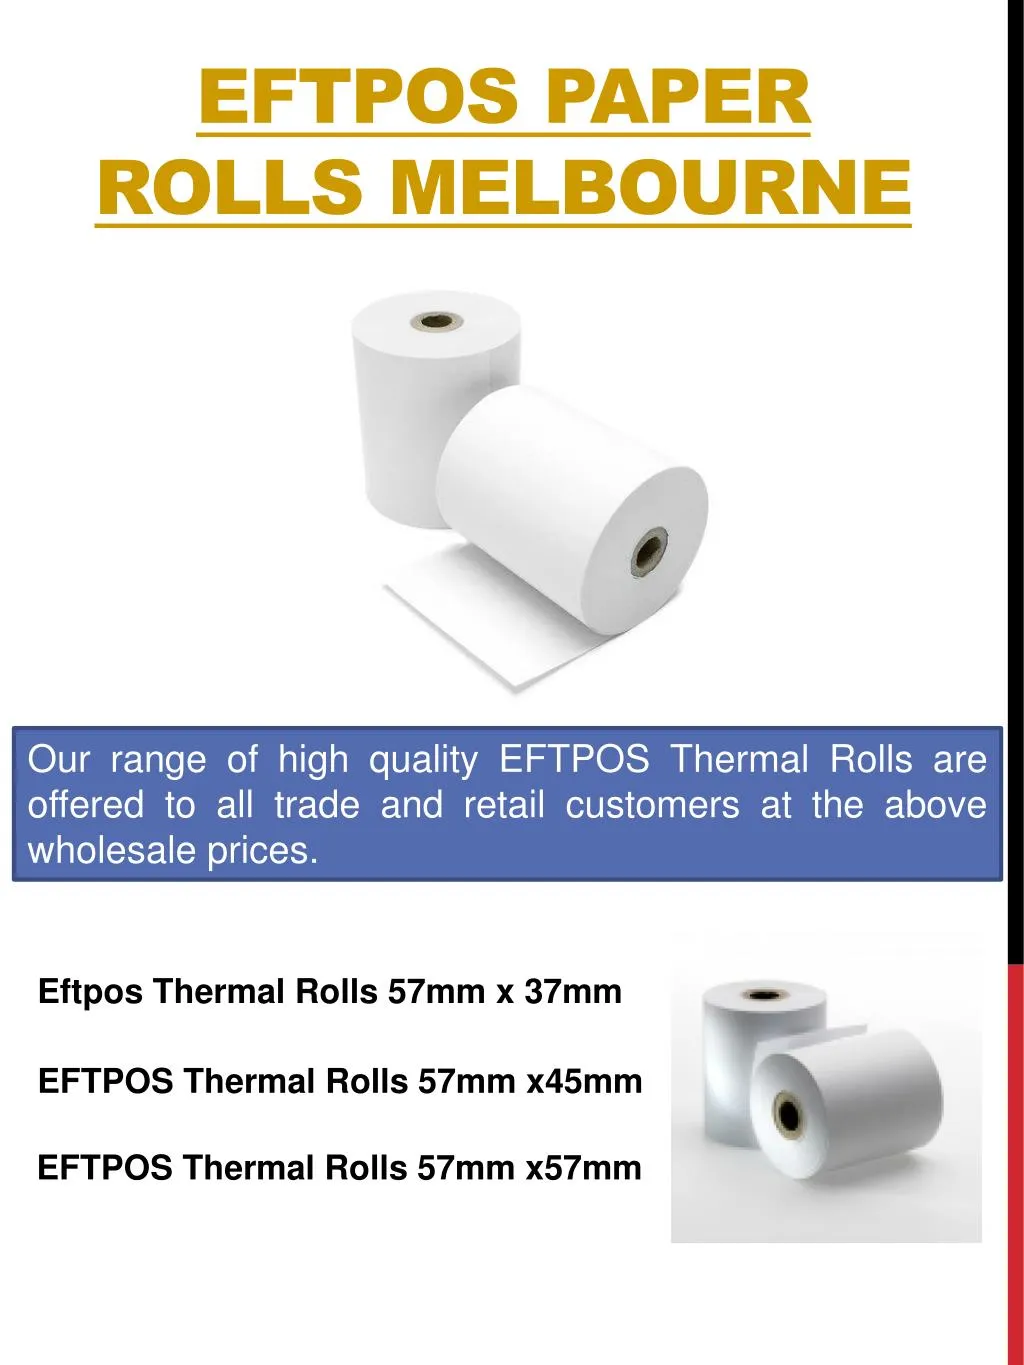 eftpos paper rolls melbourne